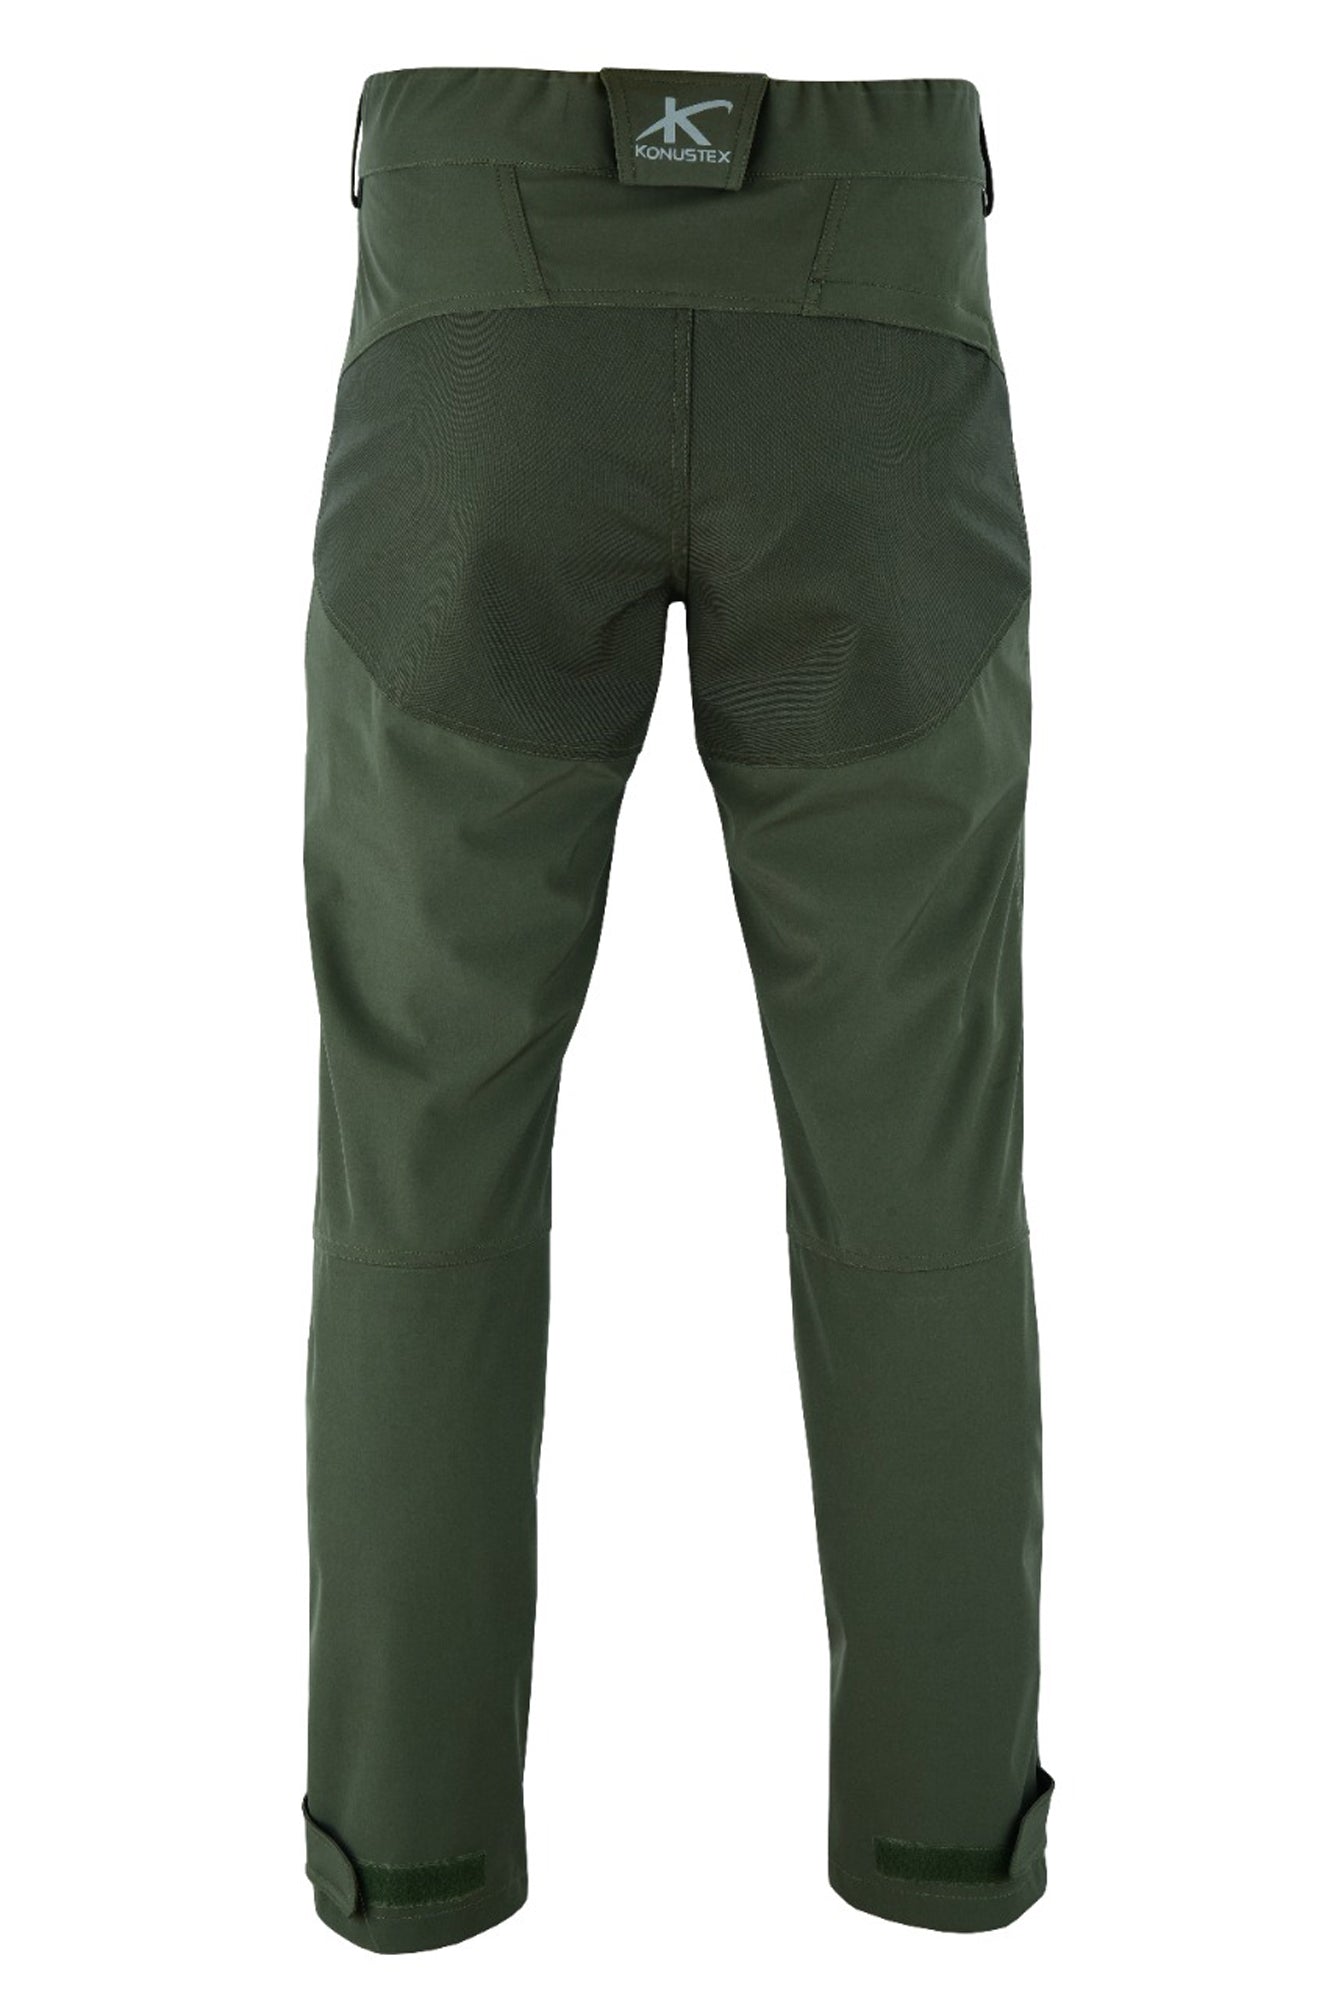 KONUSTEX - Pantalone da caccia KONUSTEX GAMEXEL impermeabile verde - Caccia Outdoor Ciclismo Fitness, Pantaloni - OnTheRoad.shop